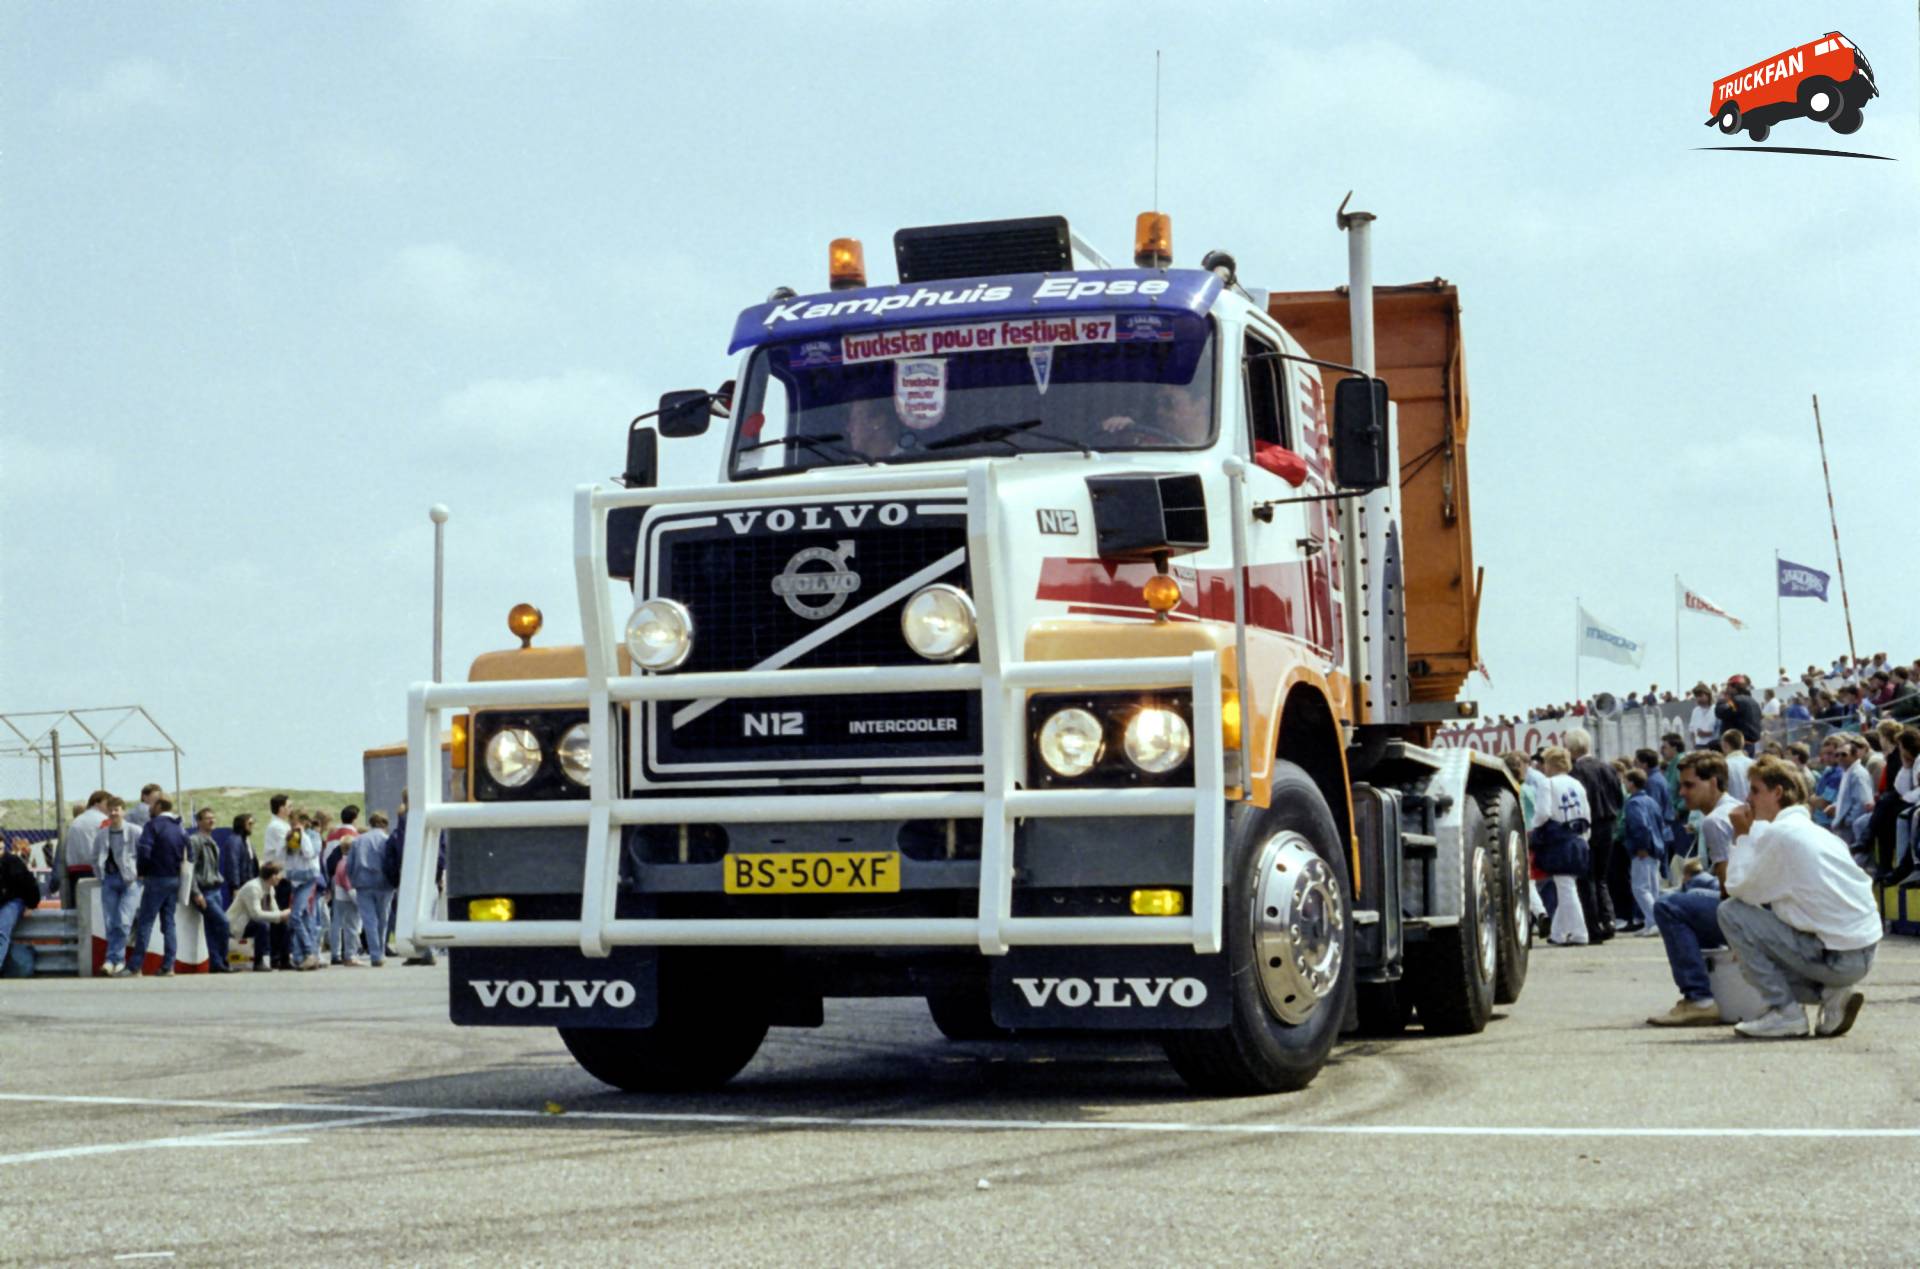 Volvo N12